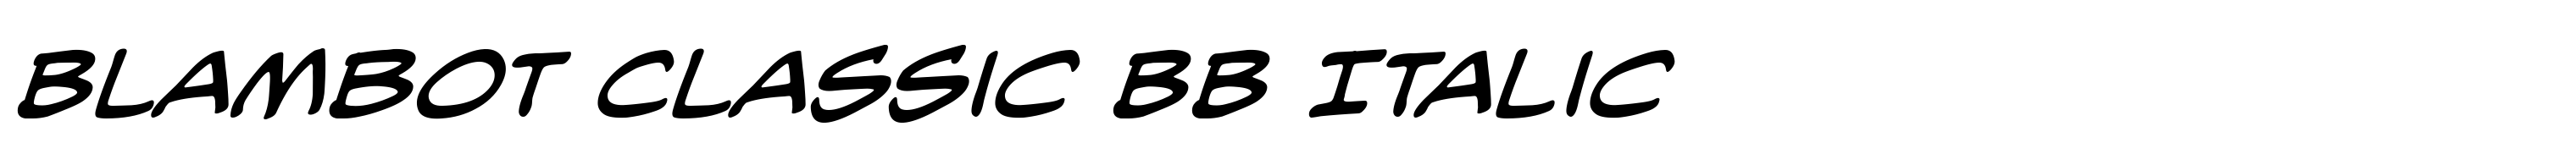 Blambot Classic BB Italic